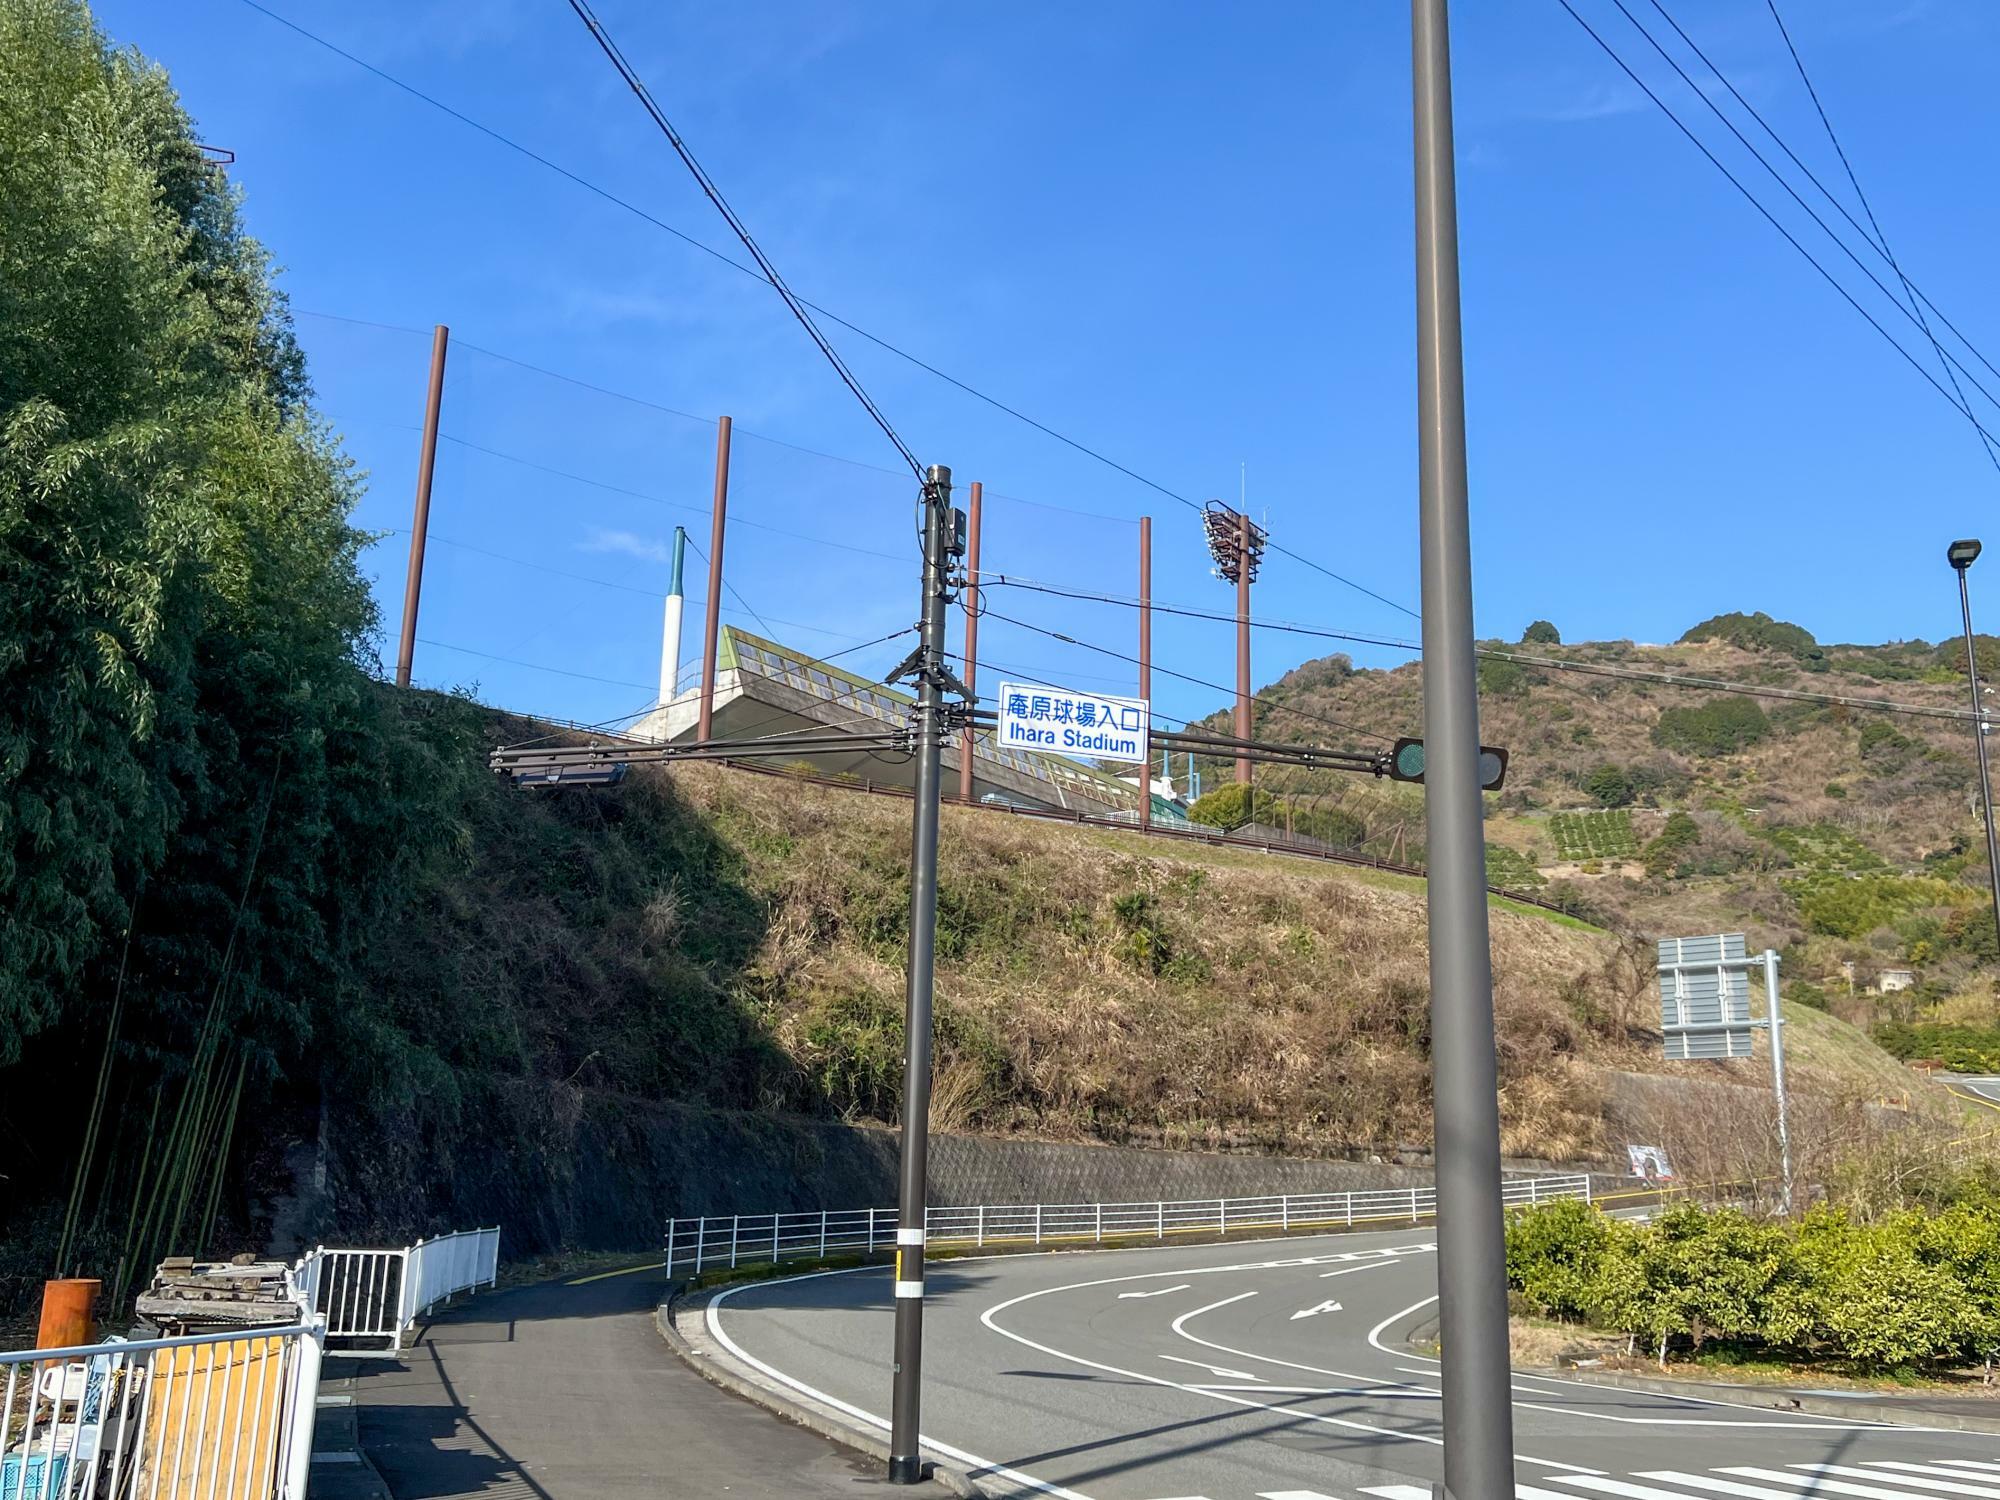 バスを降りて１００メートルほど歩いて交差点を左折すると、高台にある球場のスタンドと照明塔が見えてくる